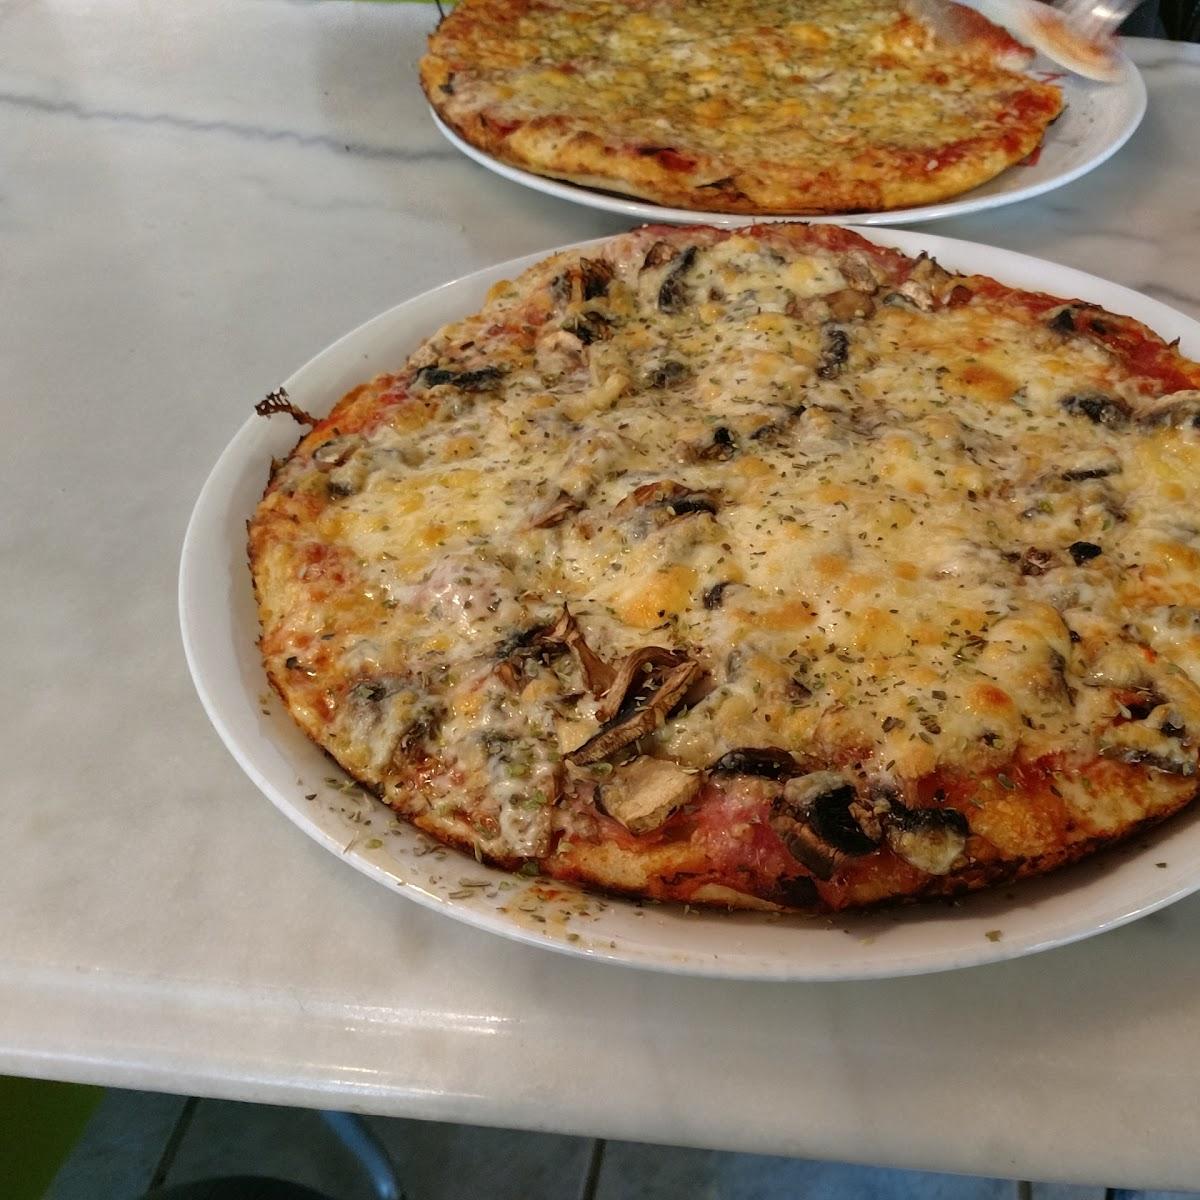 Restaurant "Pizzeria Zur Dachrinne" in Dortmund